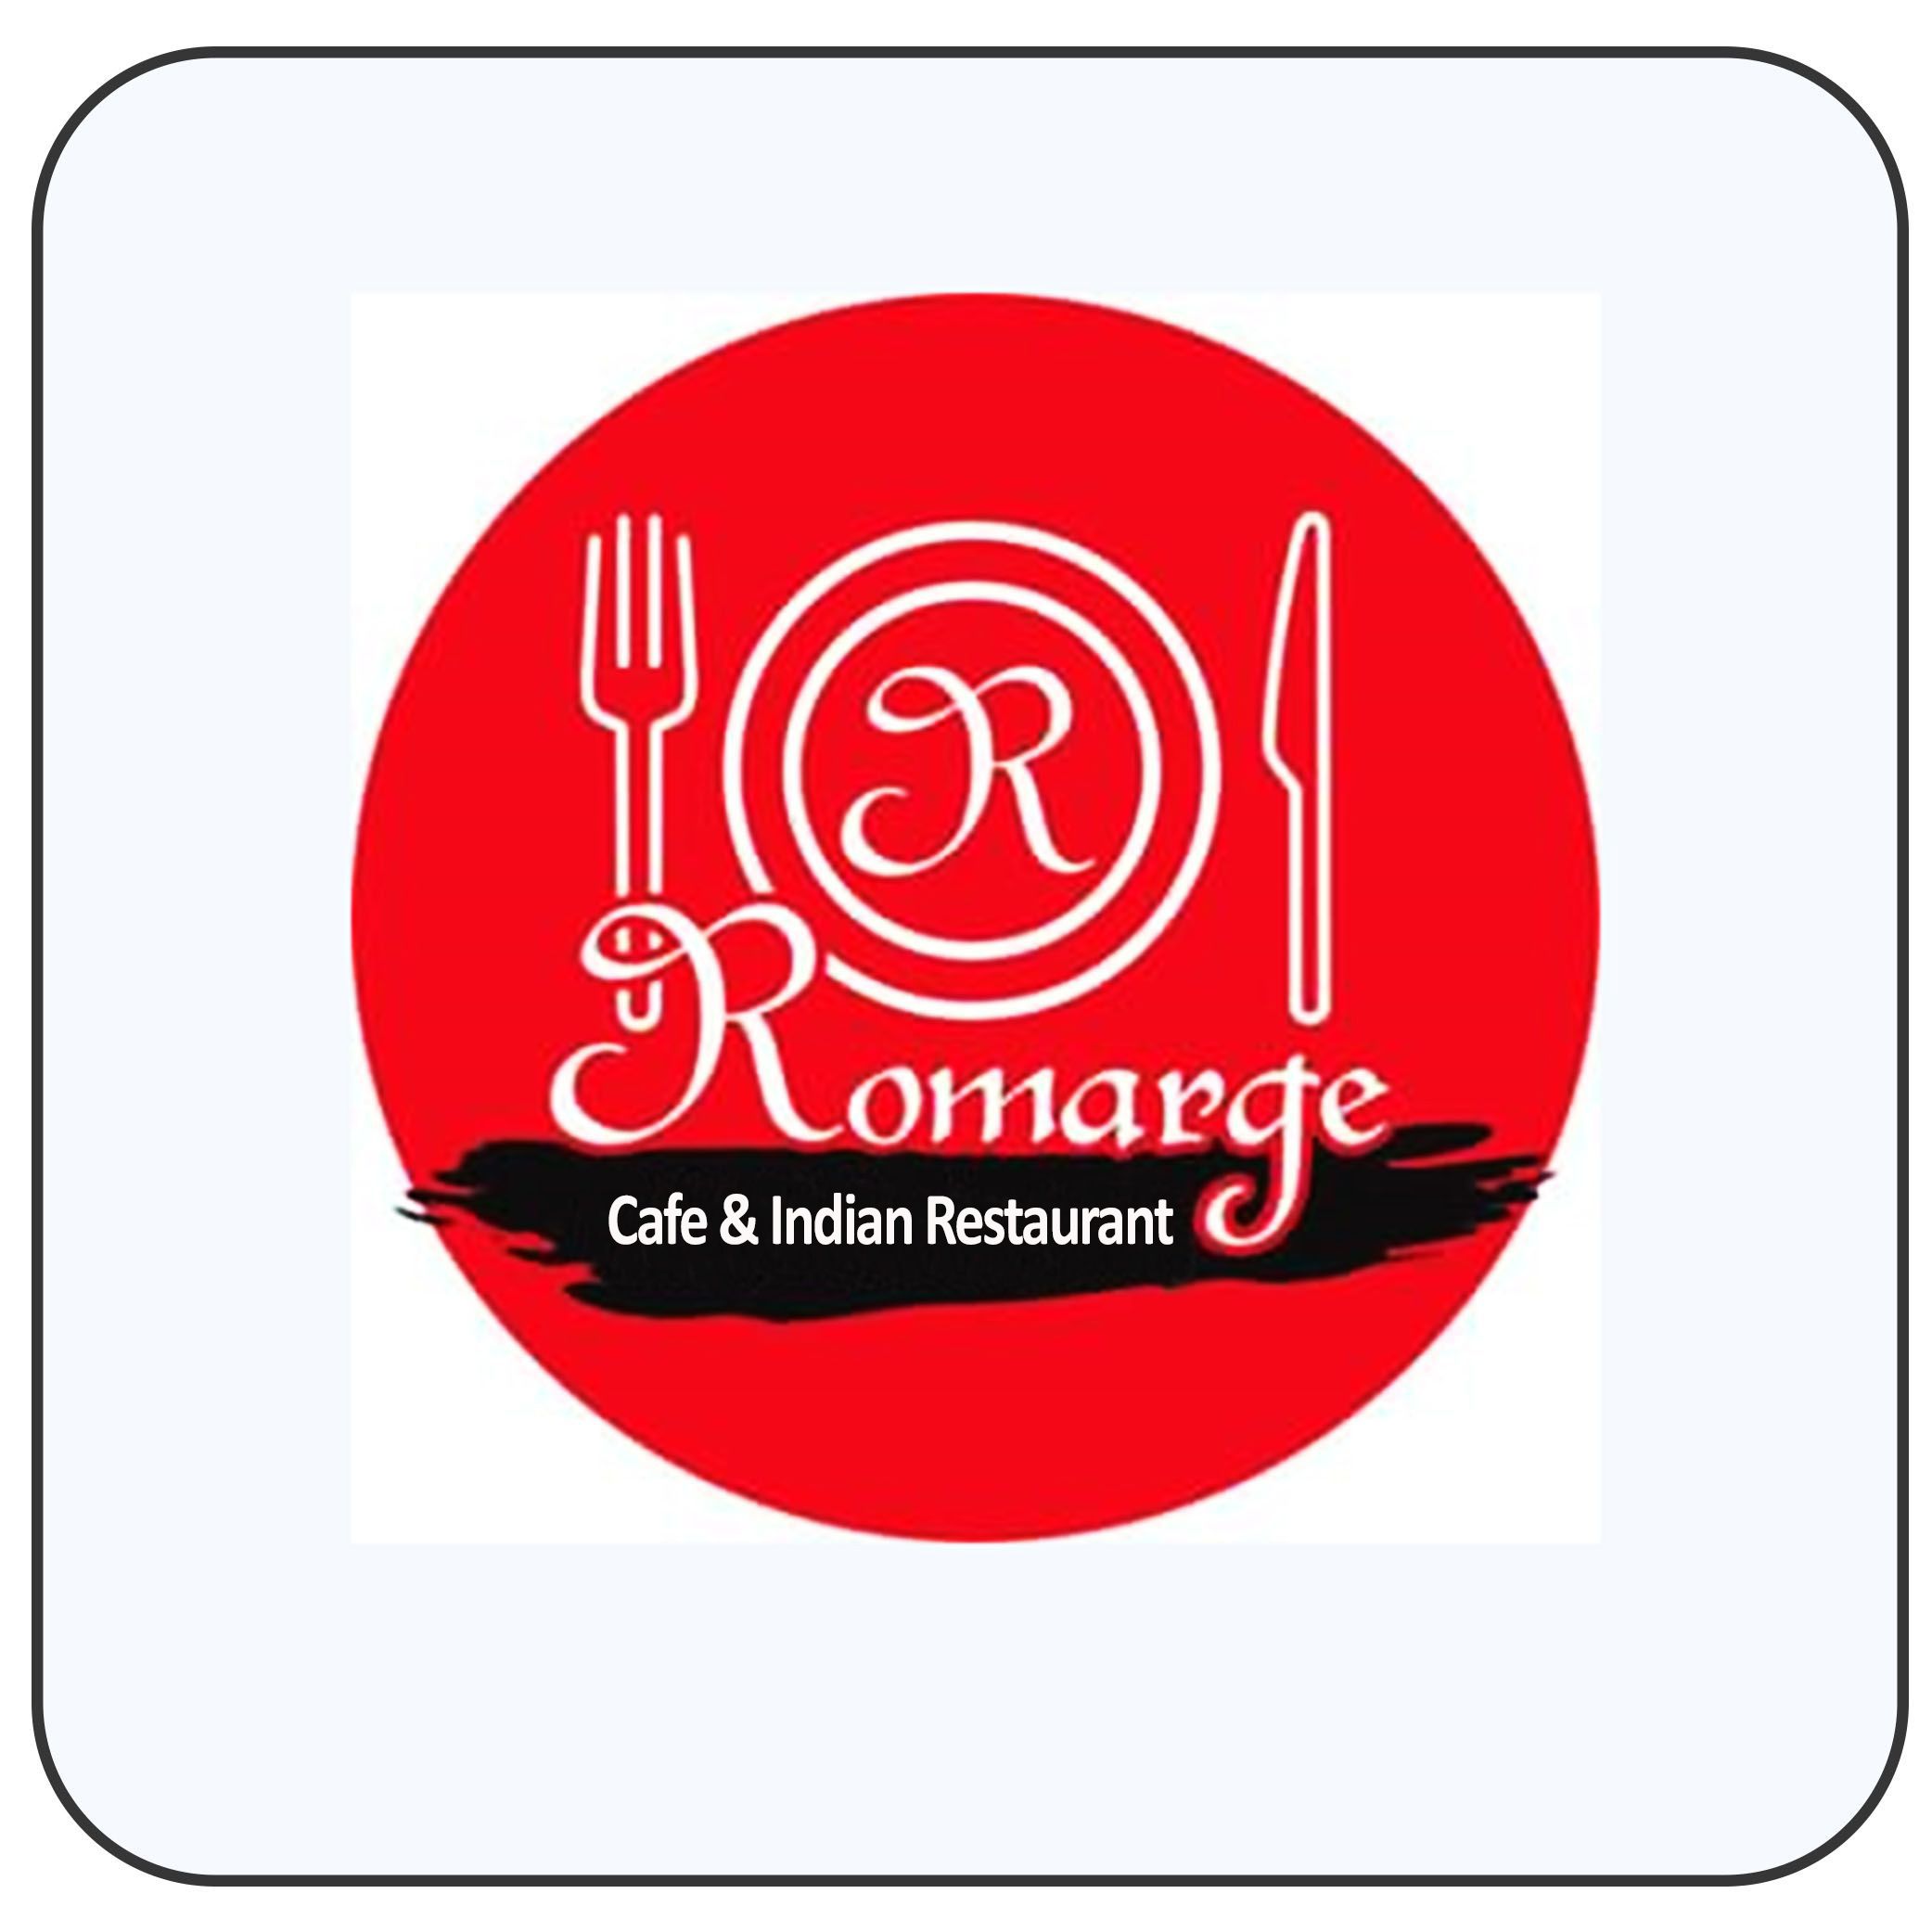 Romarge cafe & Restaurant